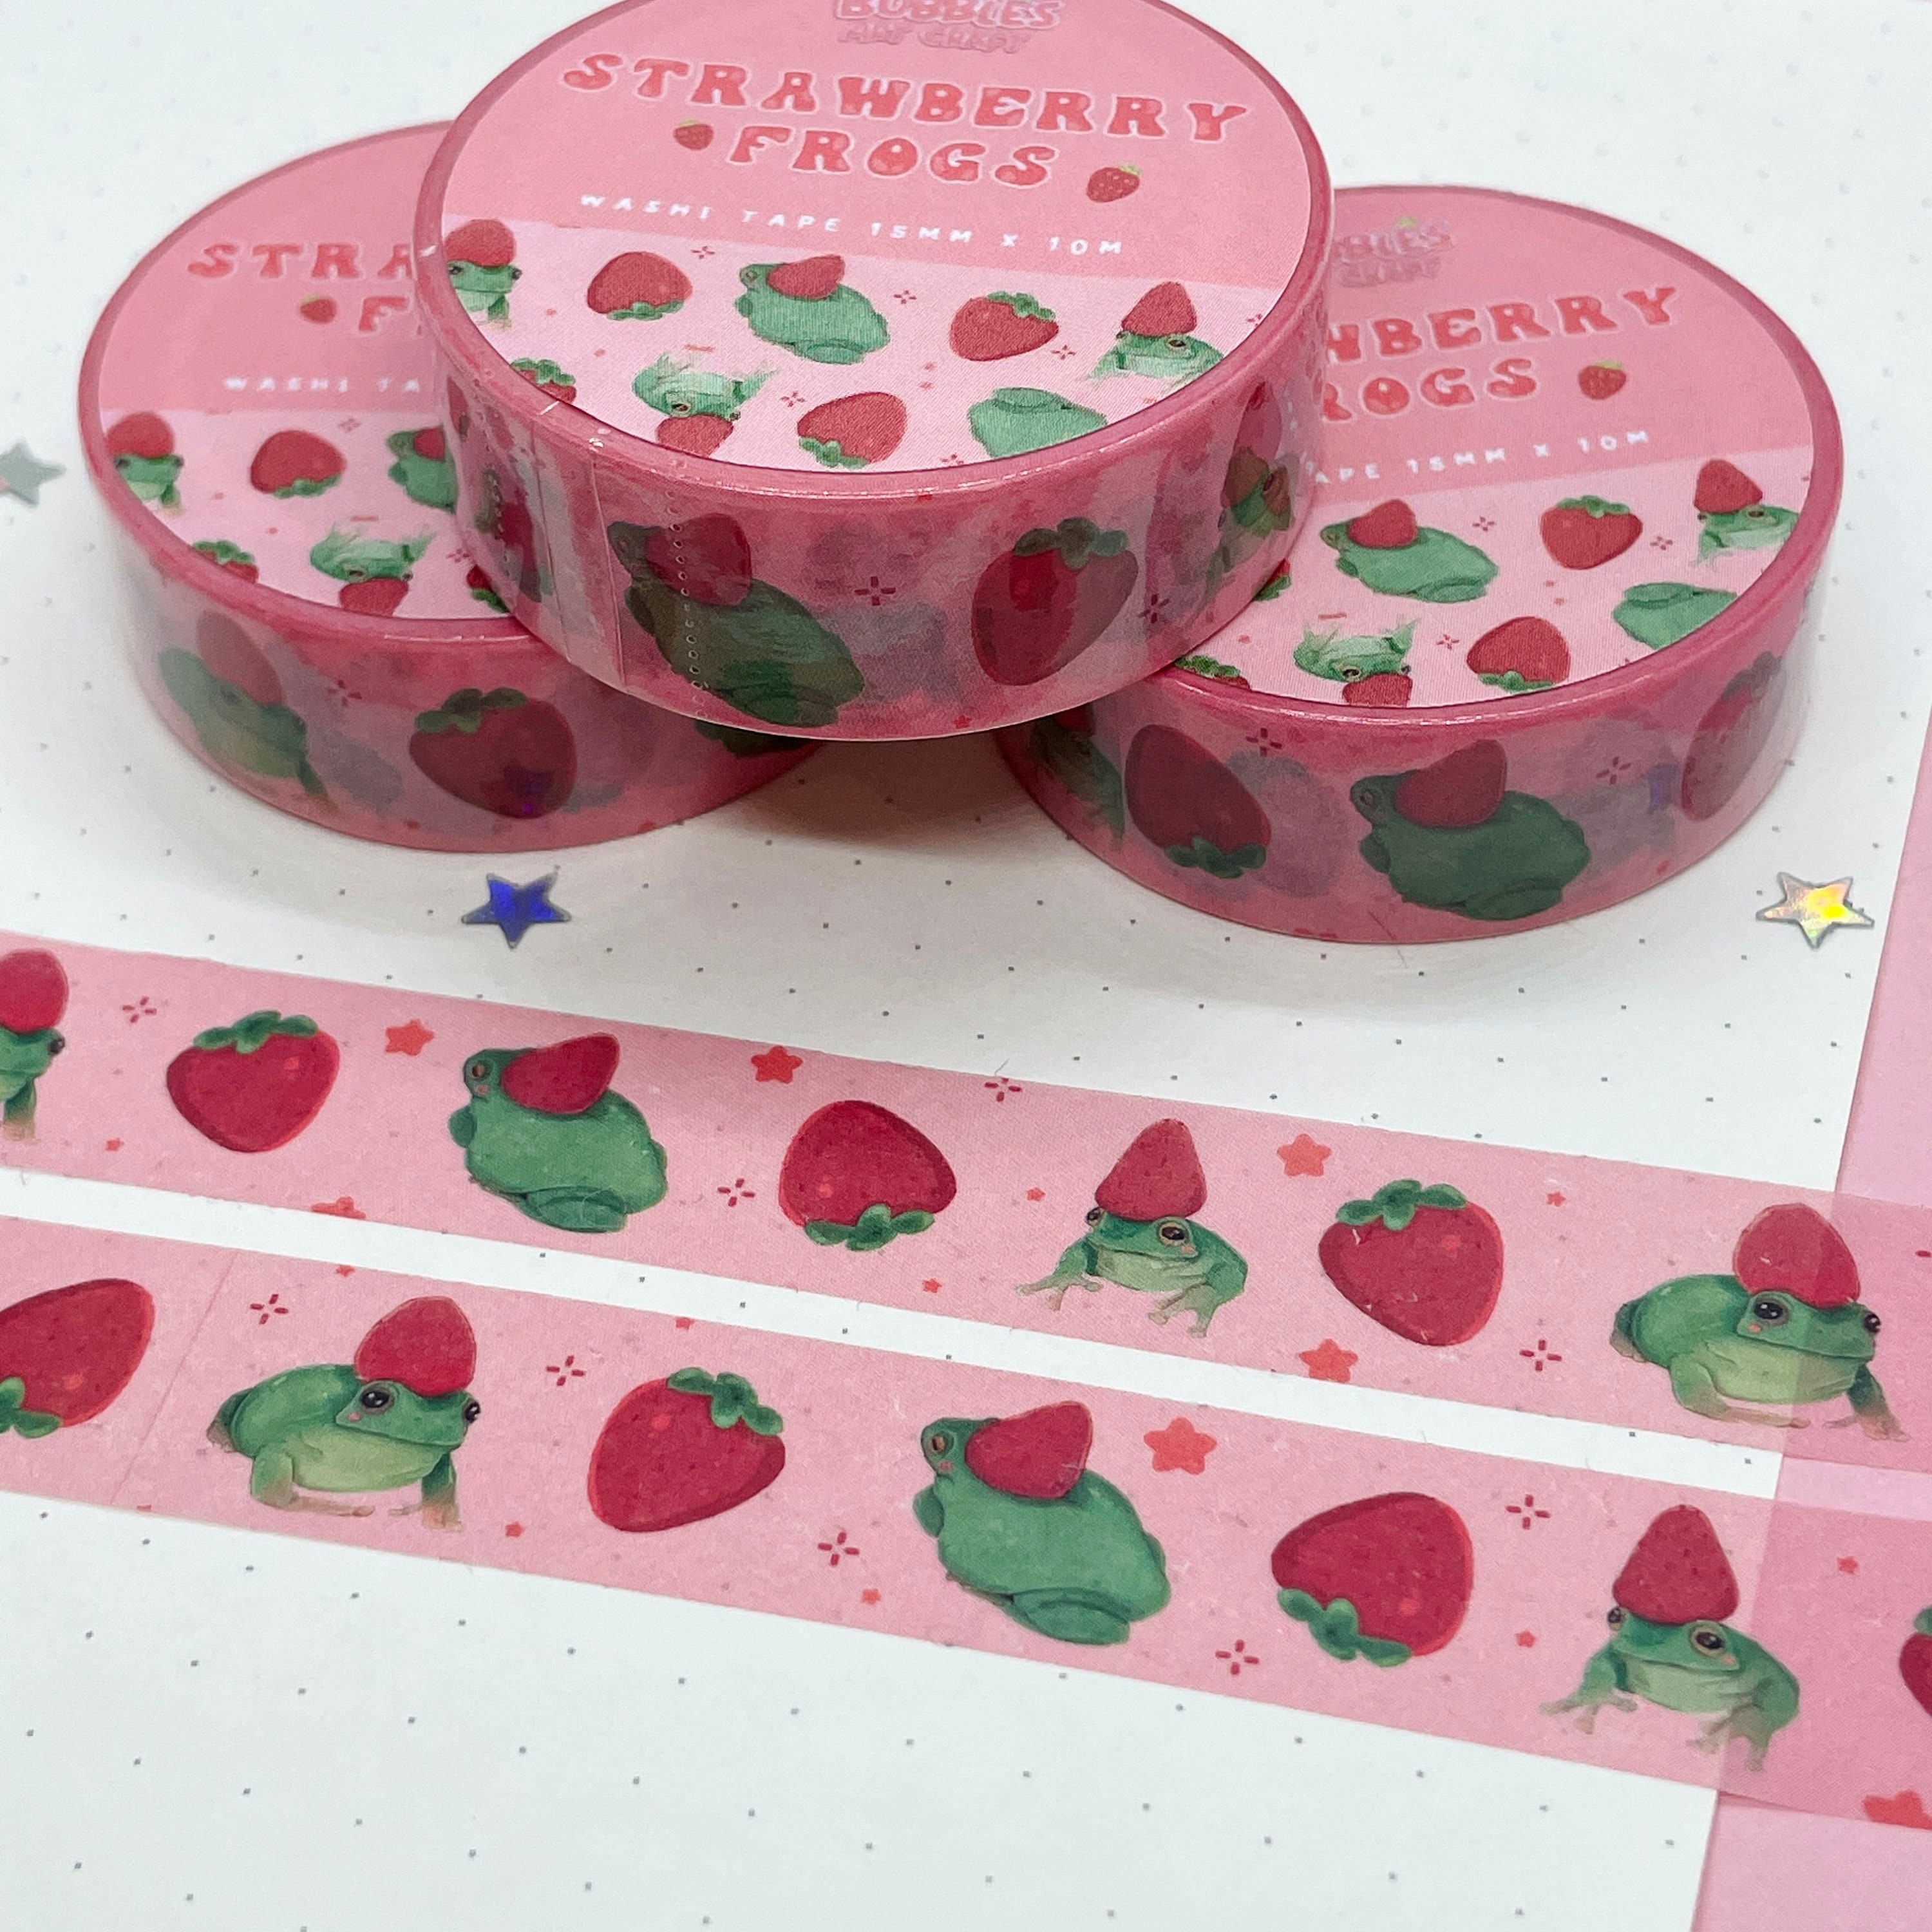 Cute fruits washi tape